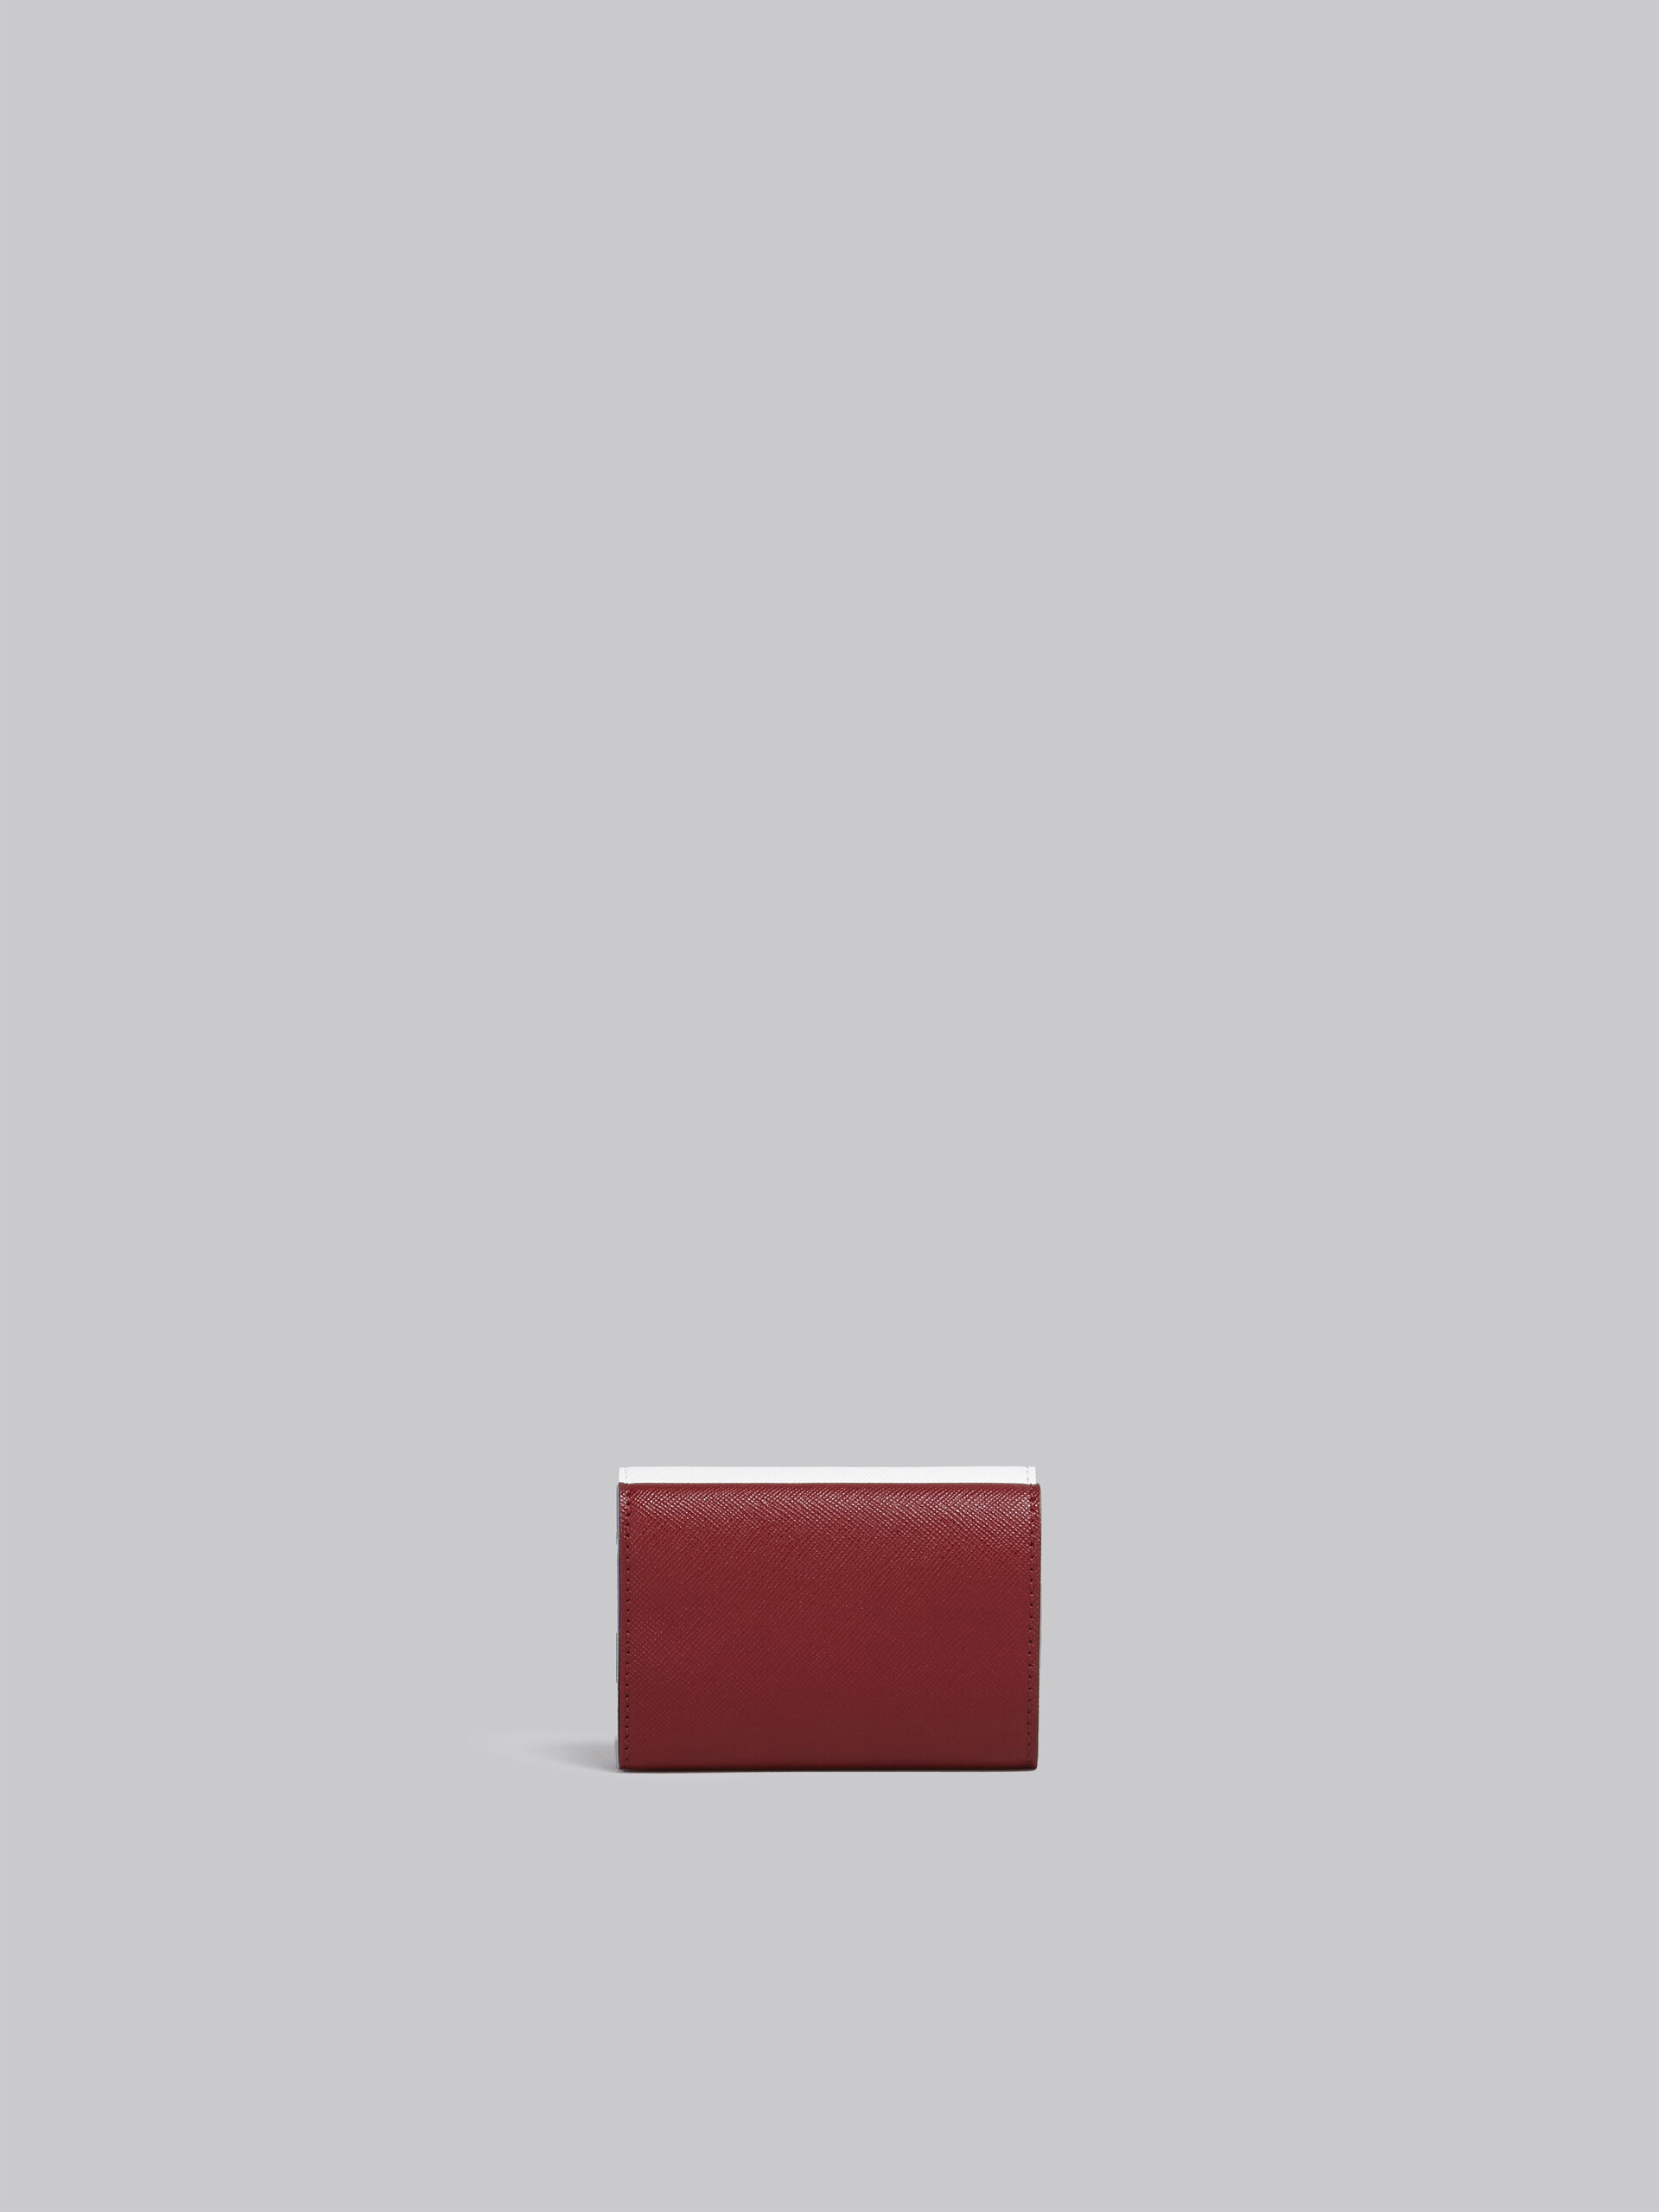 Dreifach faltbare Brieftasche aus Saffianleder in Weiß, Pink und Rot - Brieftaschen - Image 3